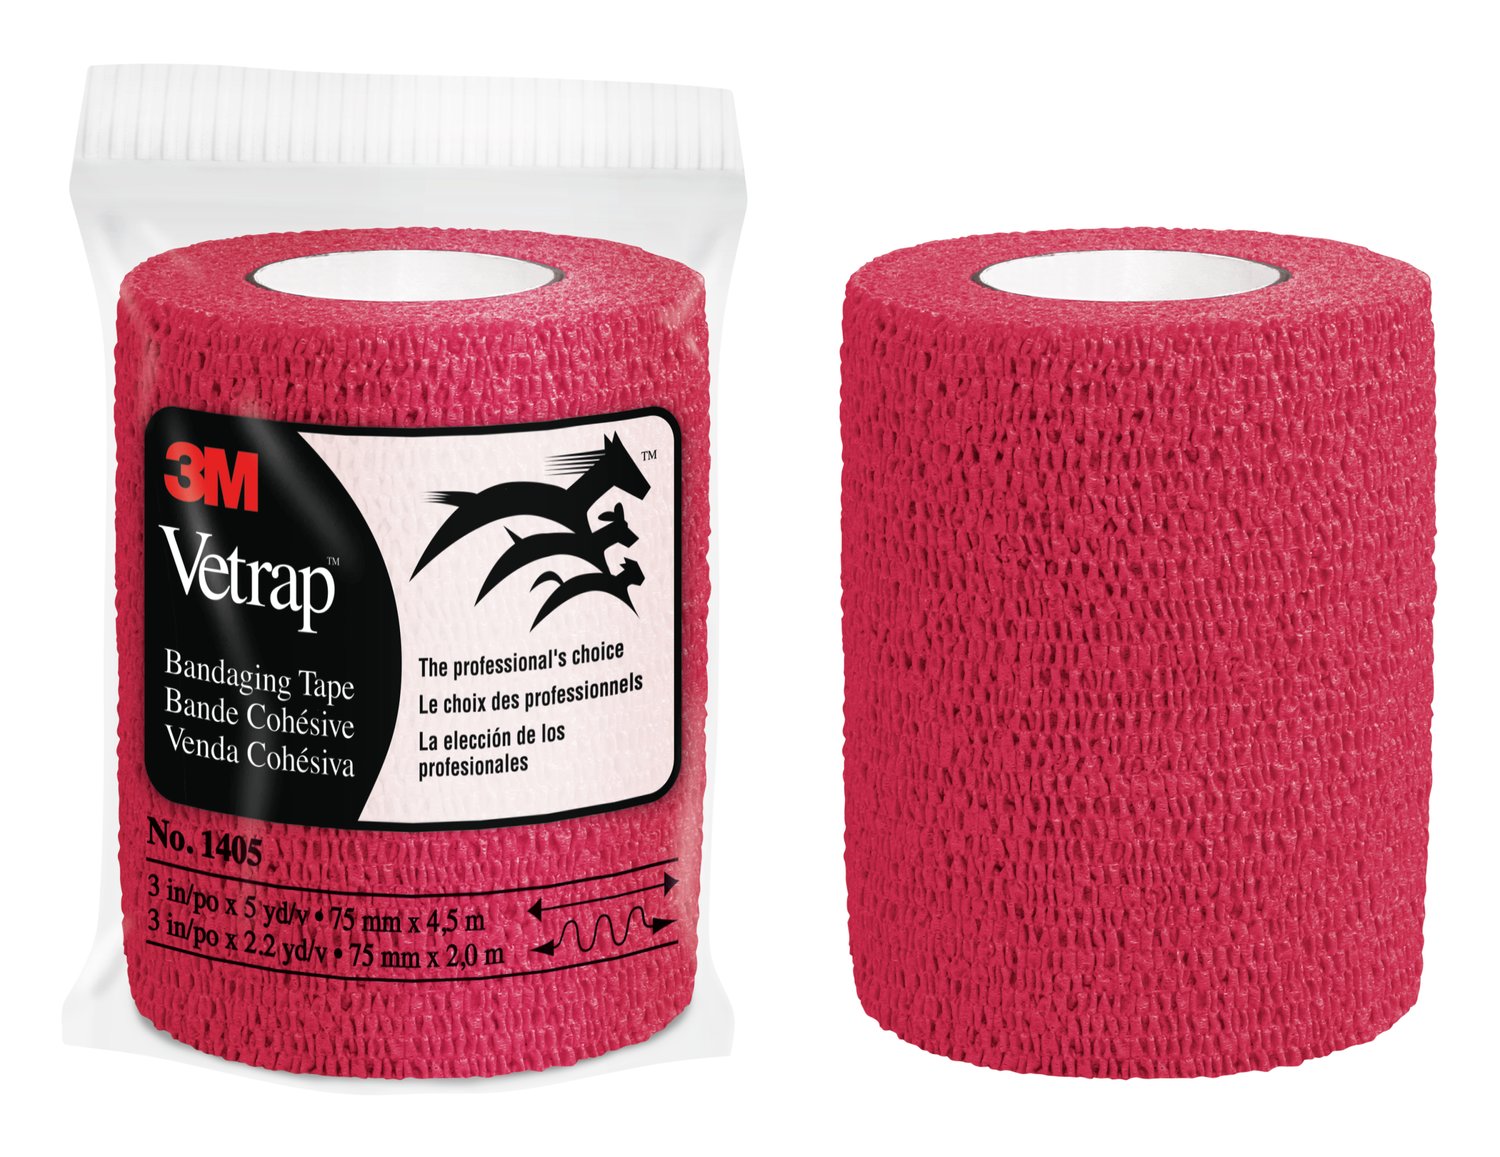 7100115213 - 3M Vetrap Bandaging Tape Bulk Pack, 1405R Bulk Red